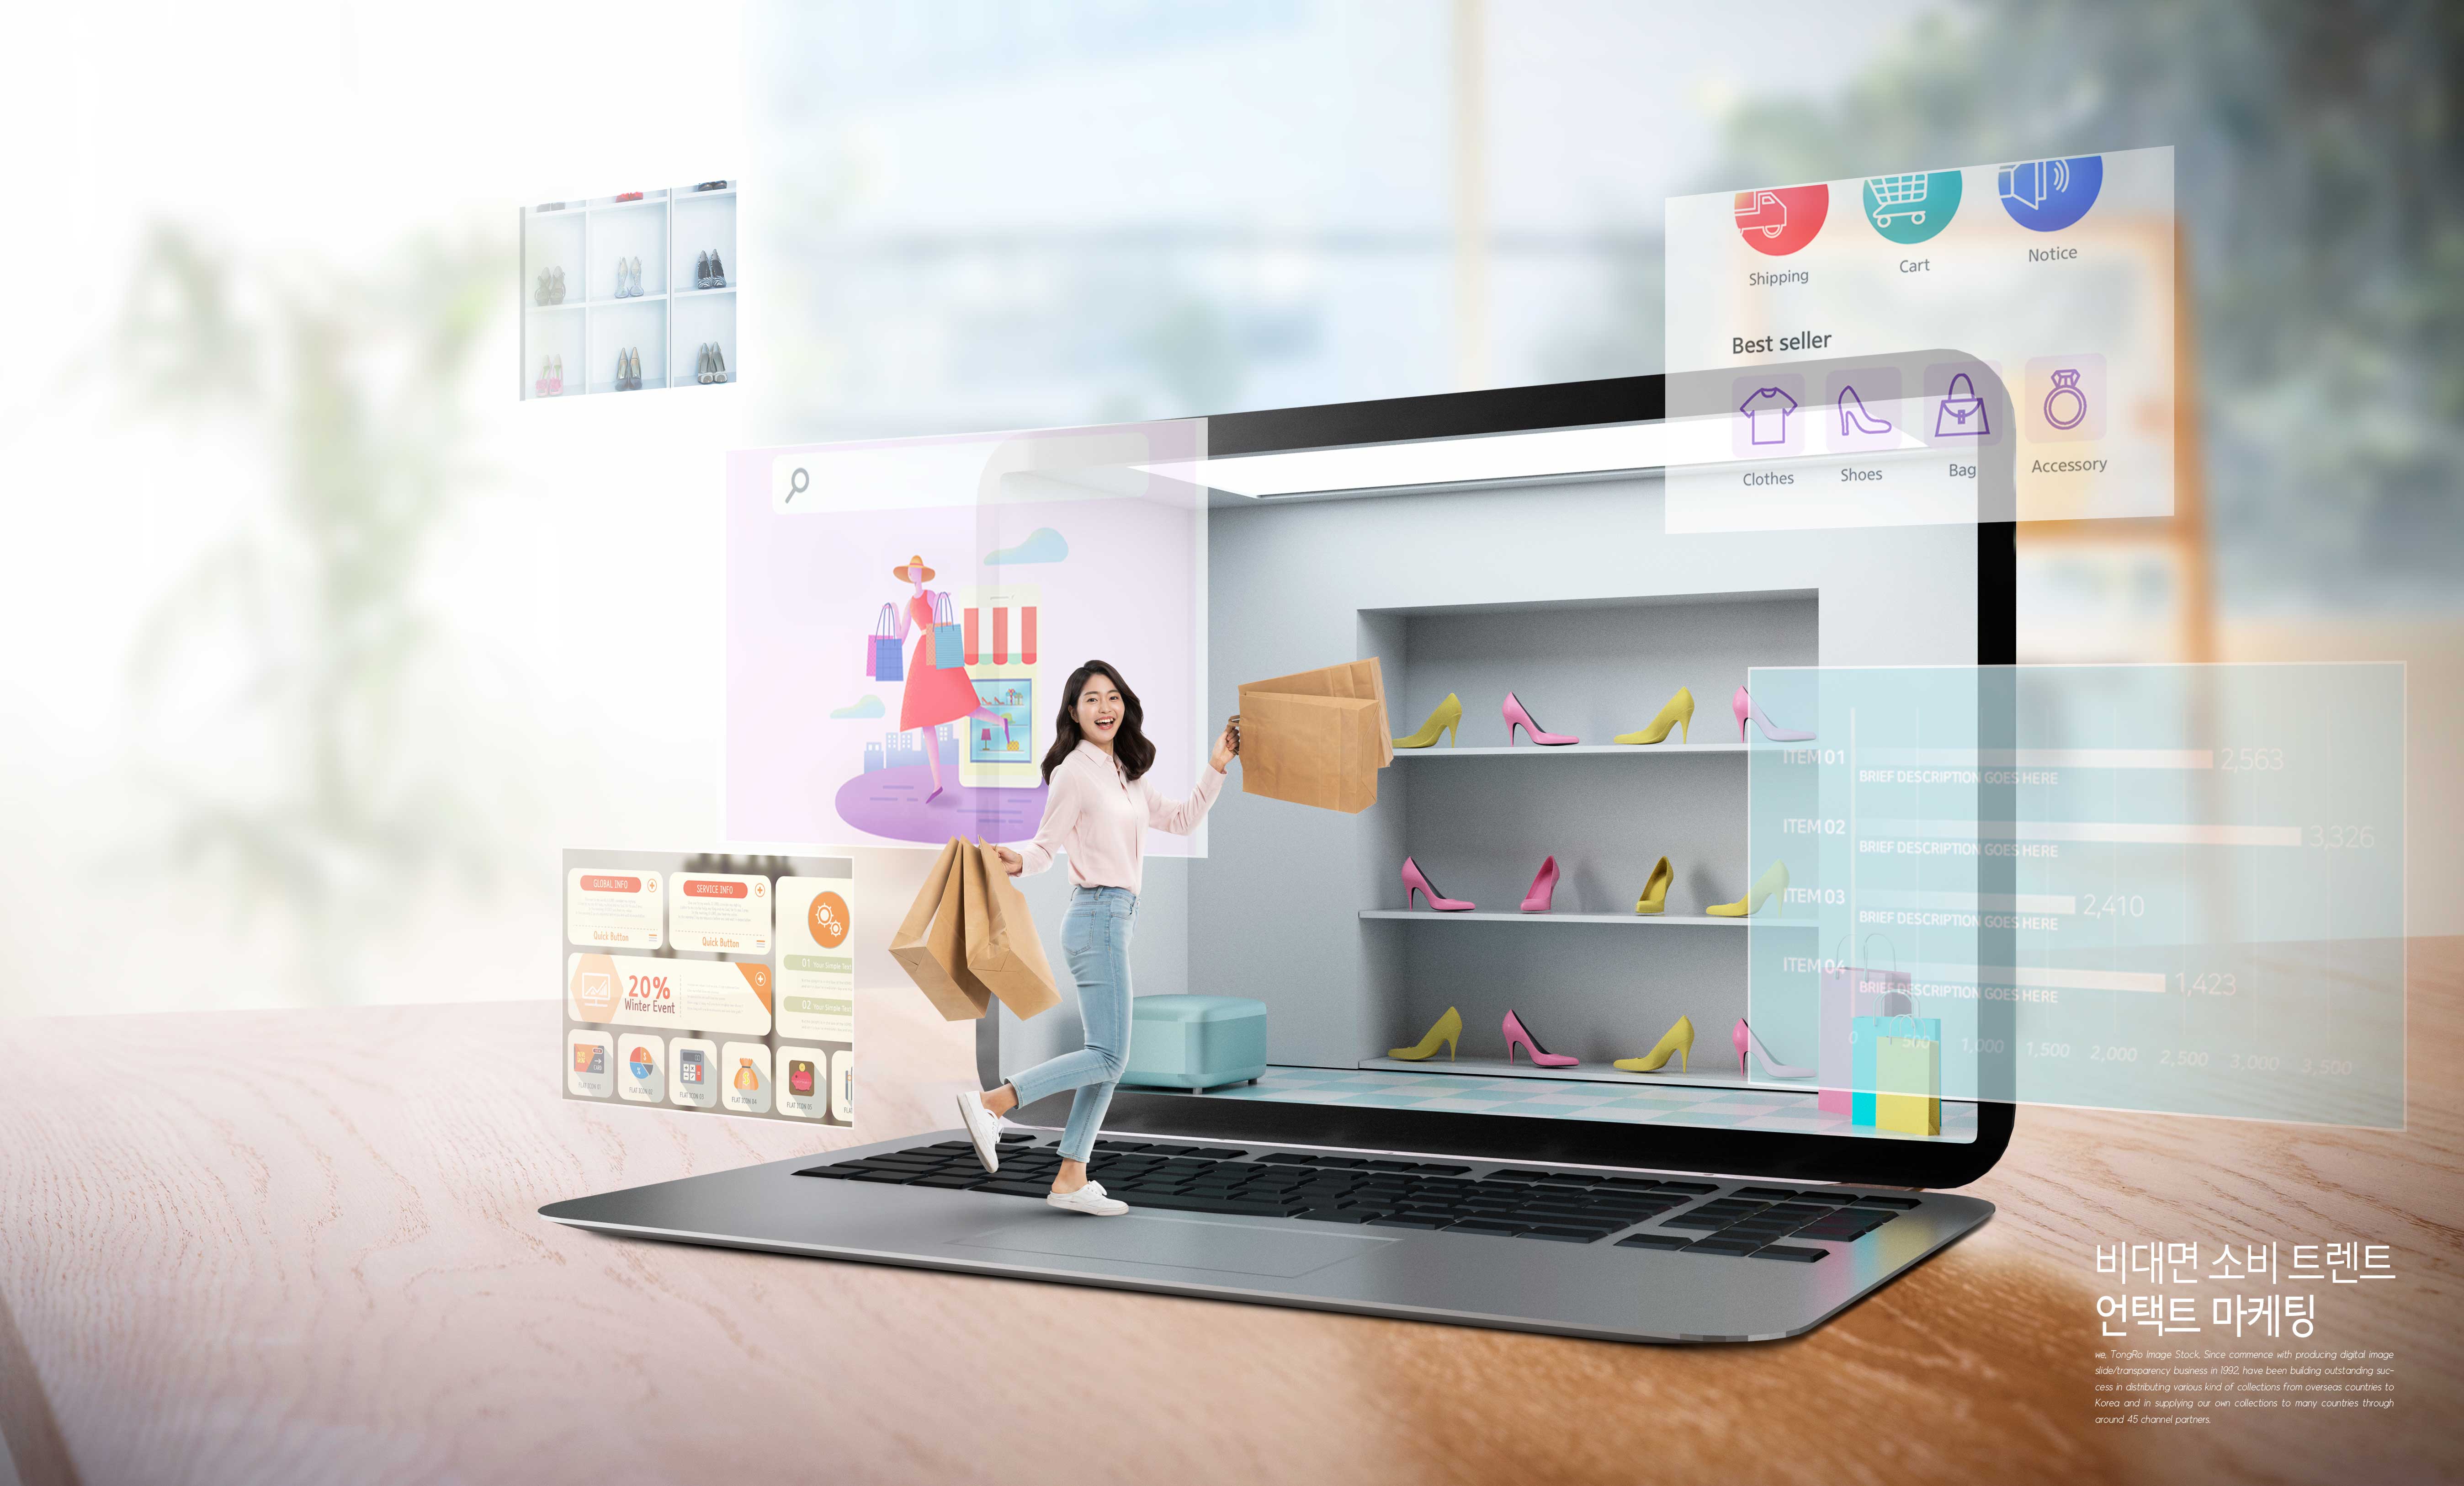 网上购物模式无接触营销网上推广主题图形psd韩国素材设计素材模板